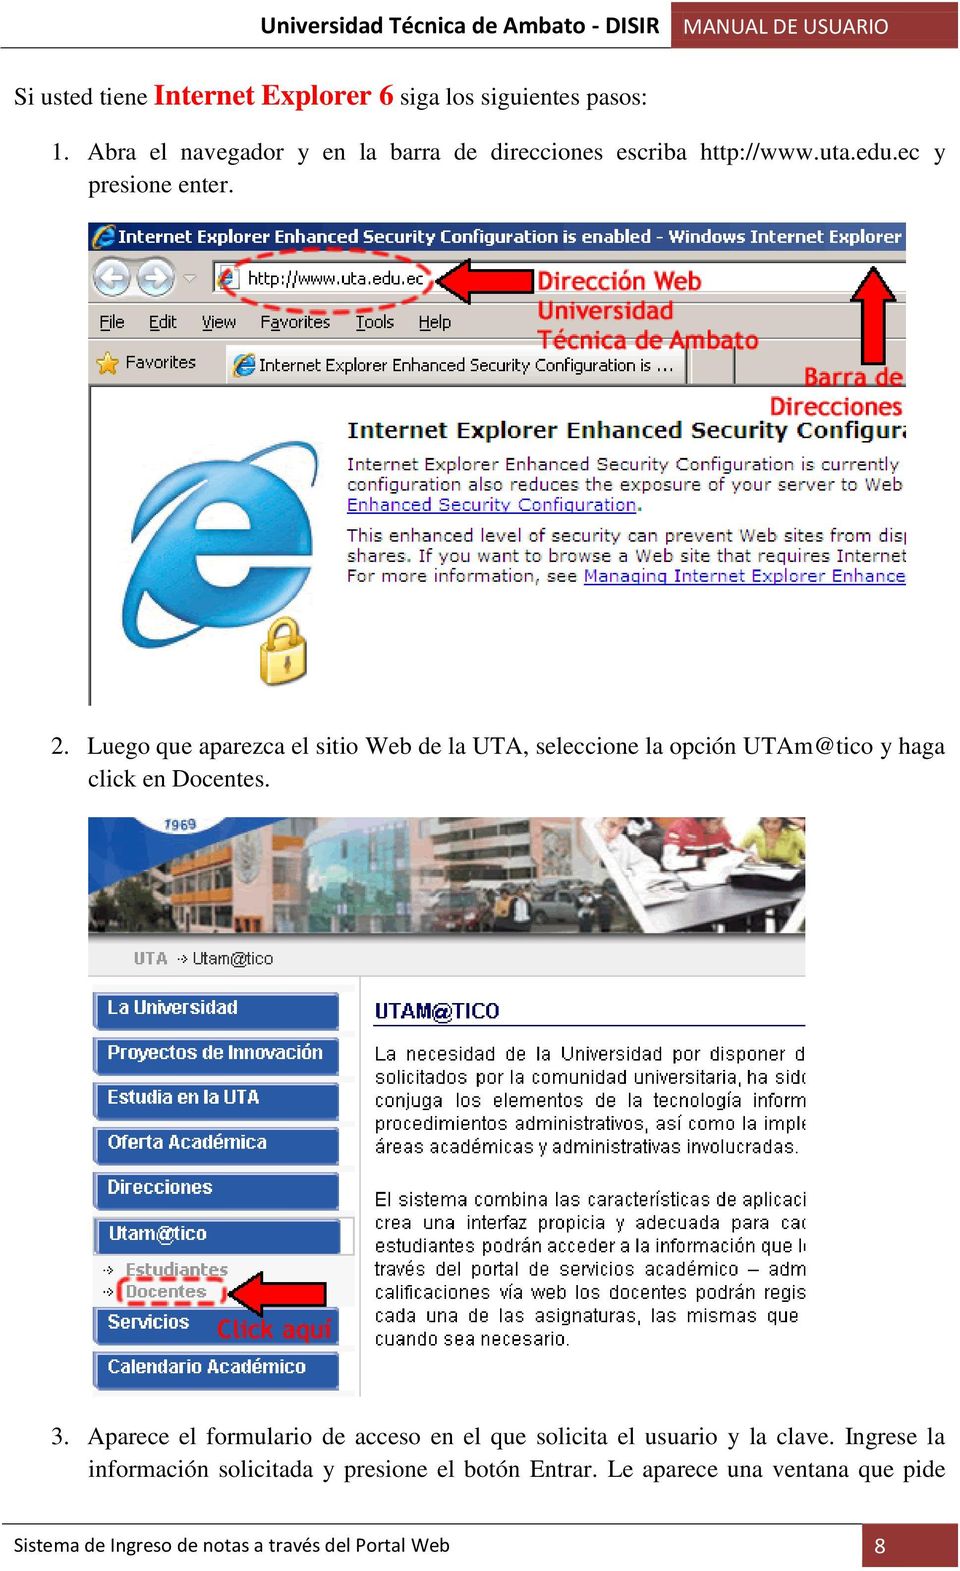 Luego que aparezca el sitio Web de la UTA, seleccione la opción UTAm@tico y haga click en Docentes. 3.